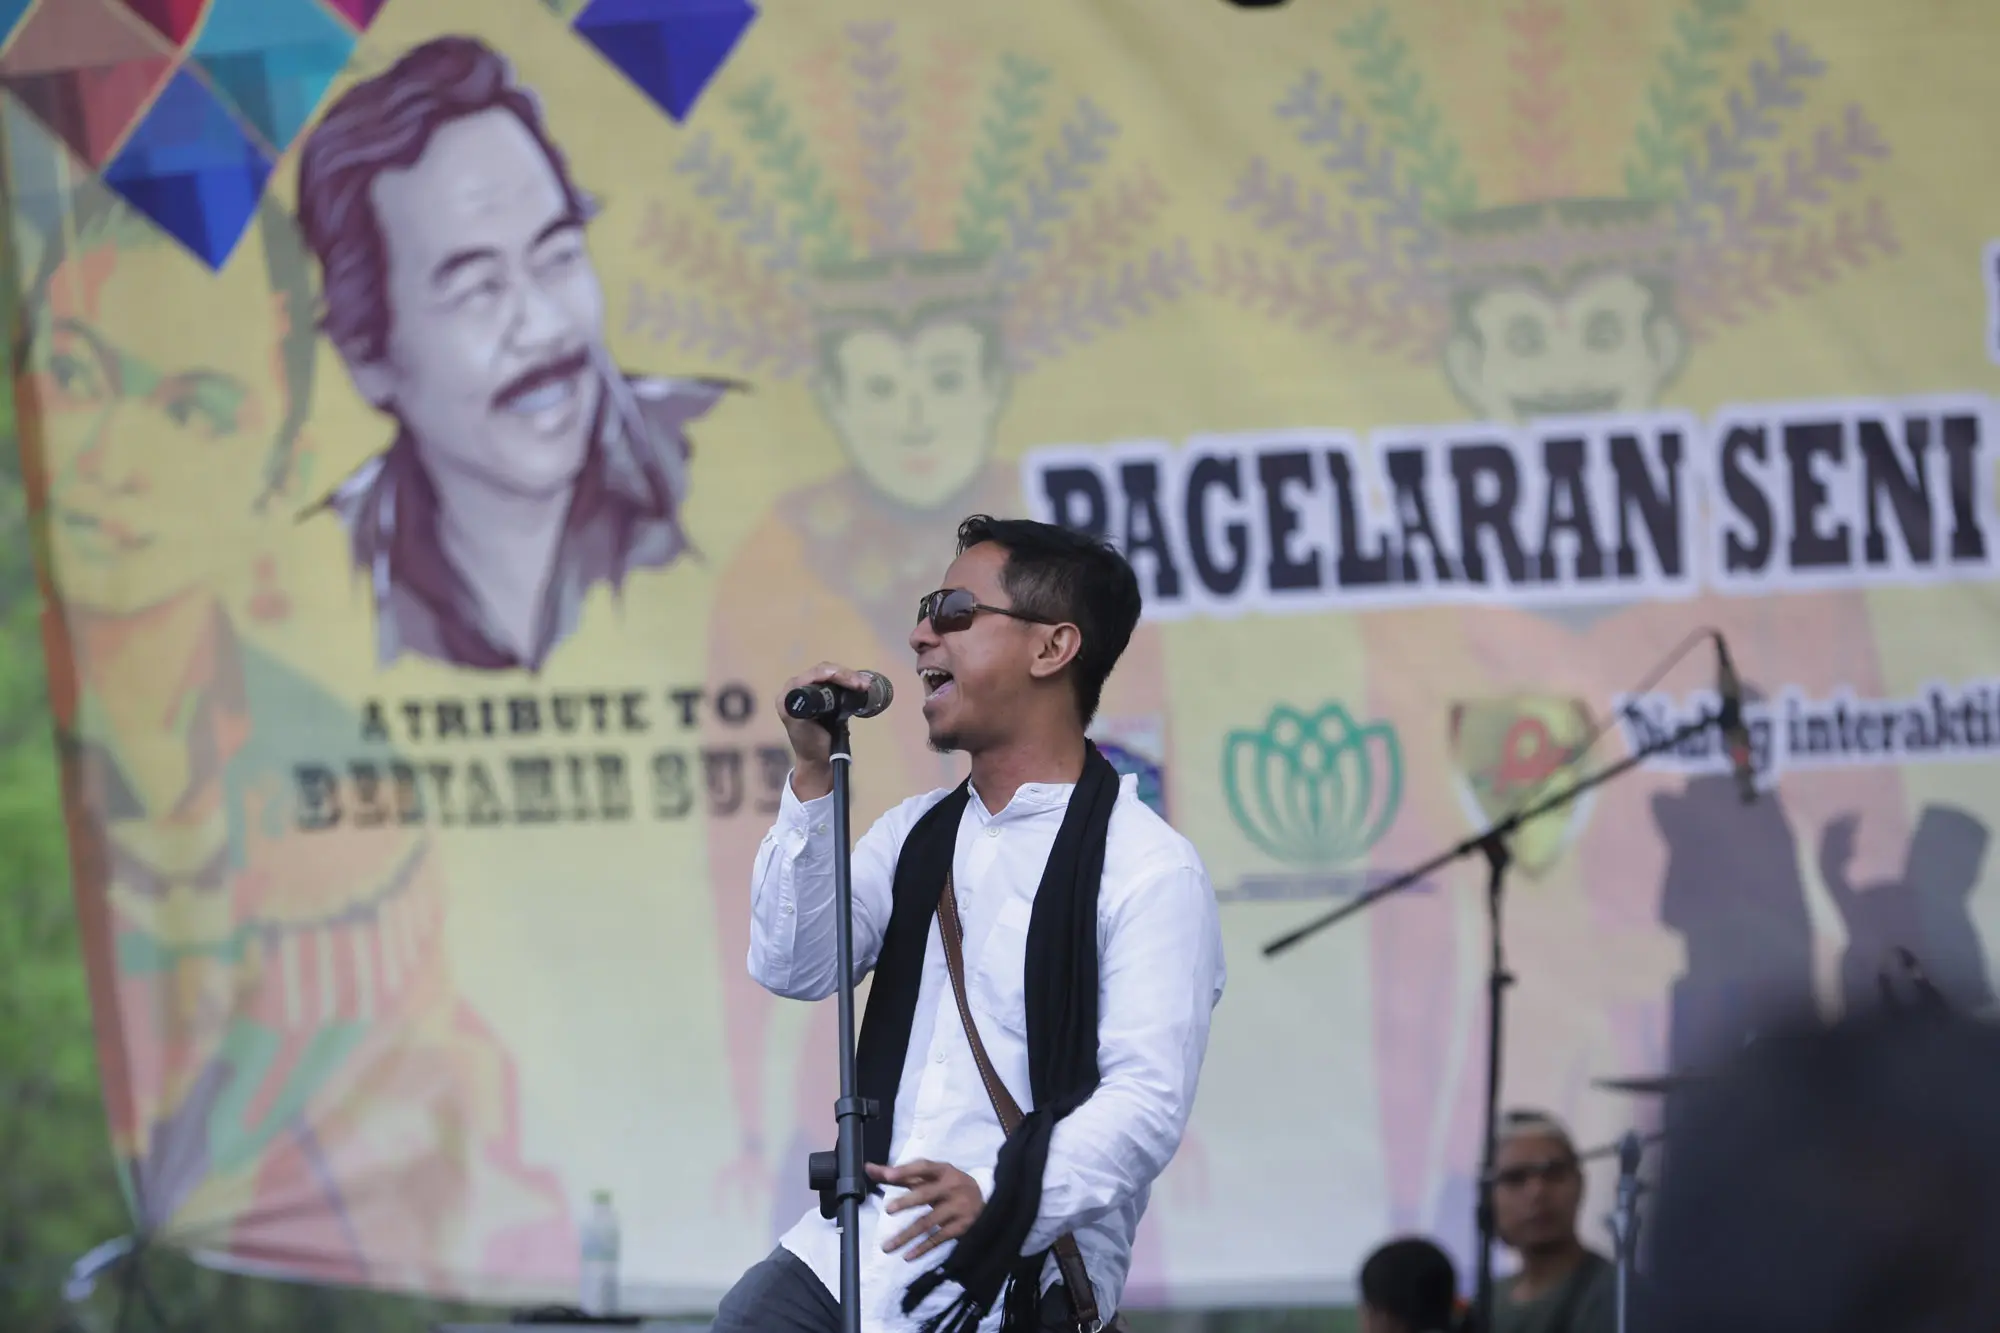 Sang Alang manggung di Pagelaran Seni Budaya Betawi & Nusantara, Tribute to Benyamin Sueb.